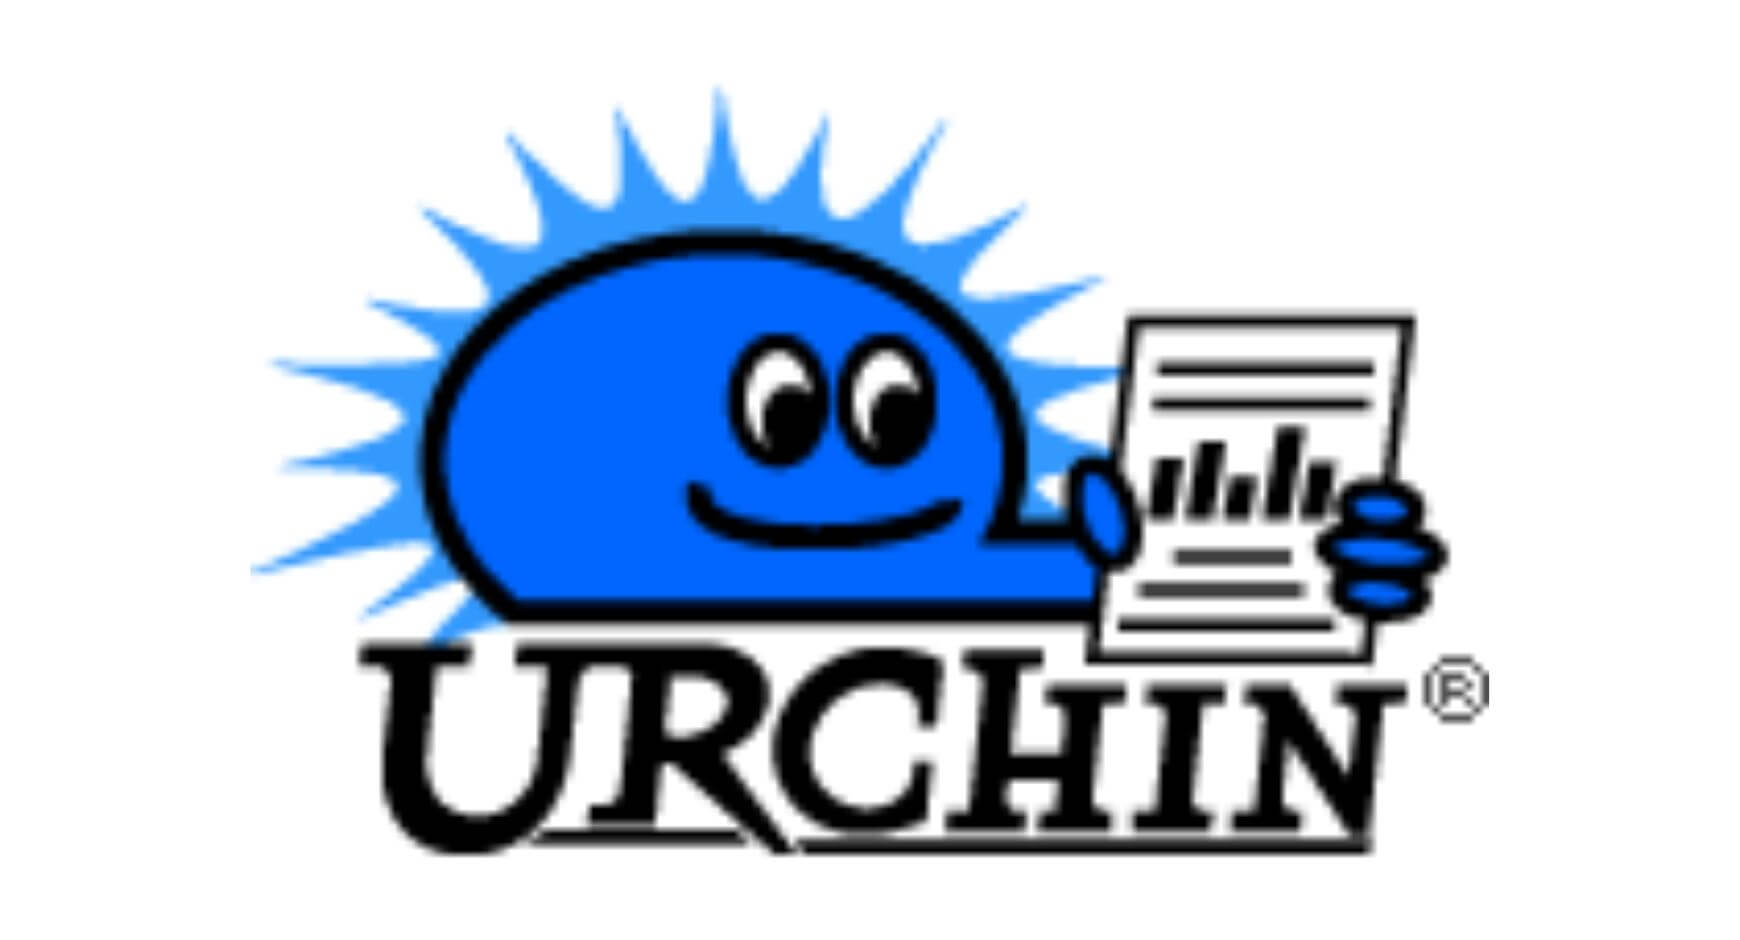 Urchin's logo